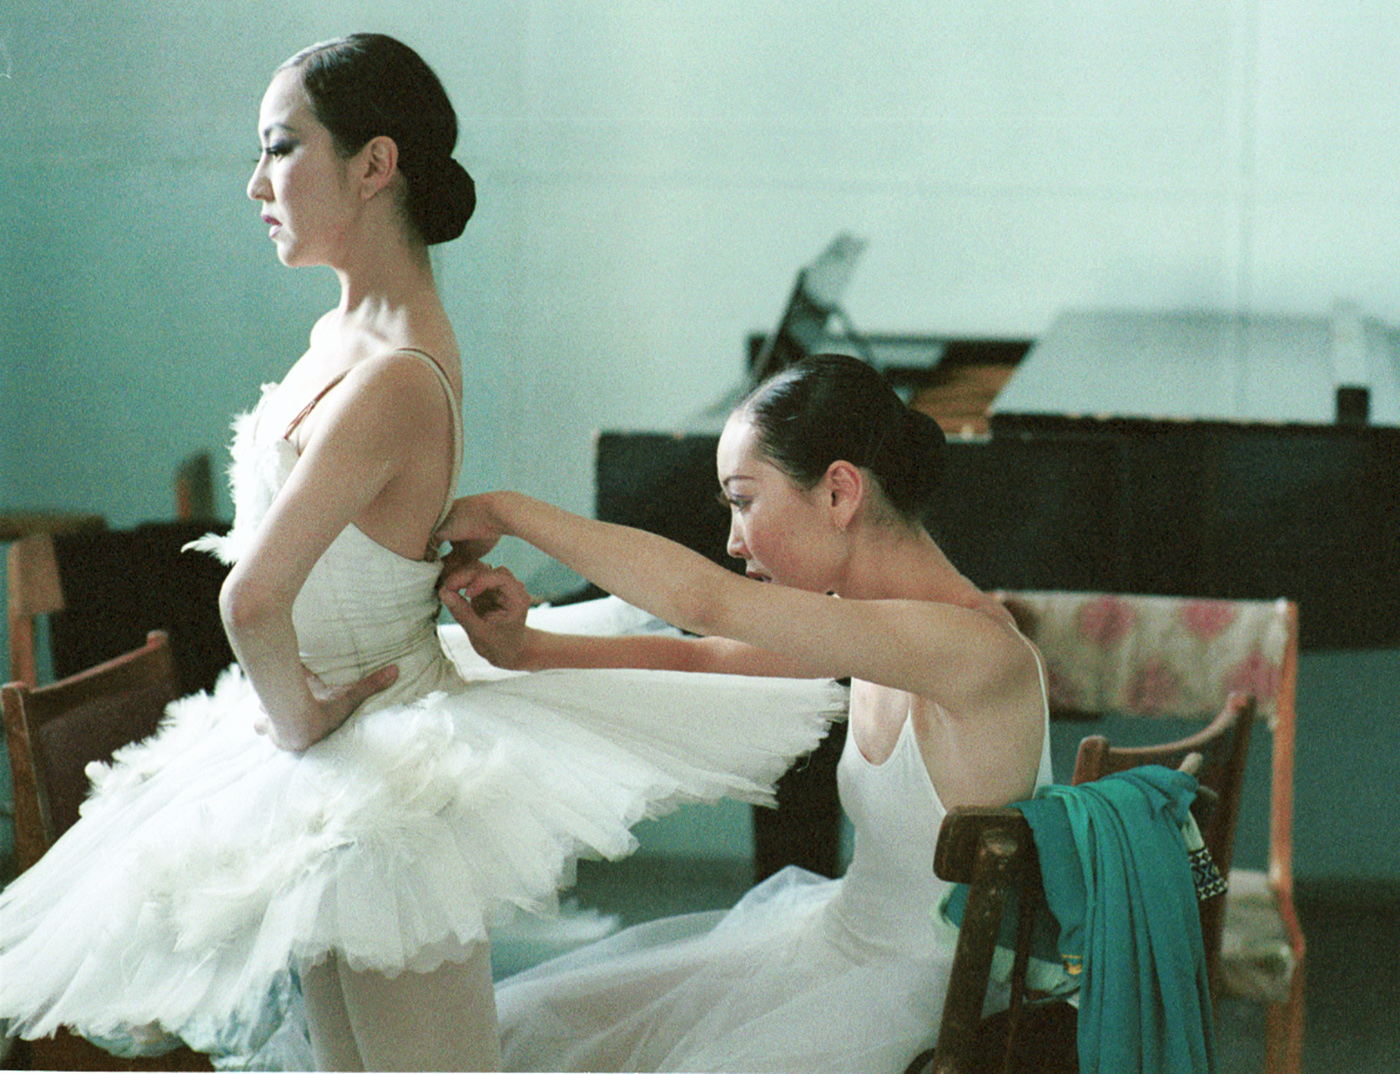 National Ballet Company of Mongolia